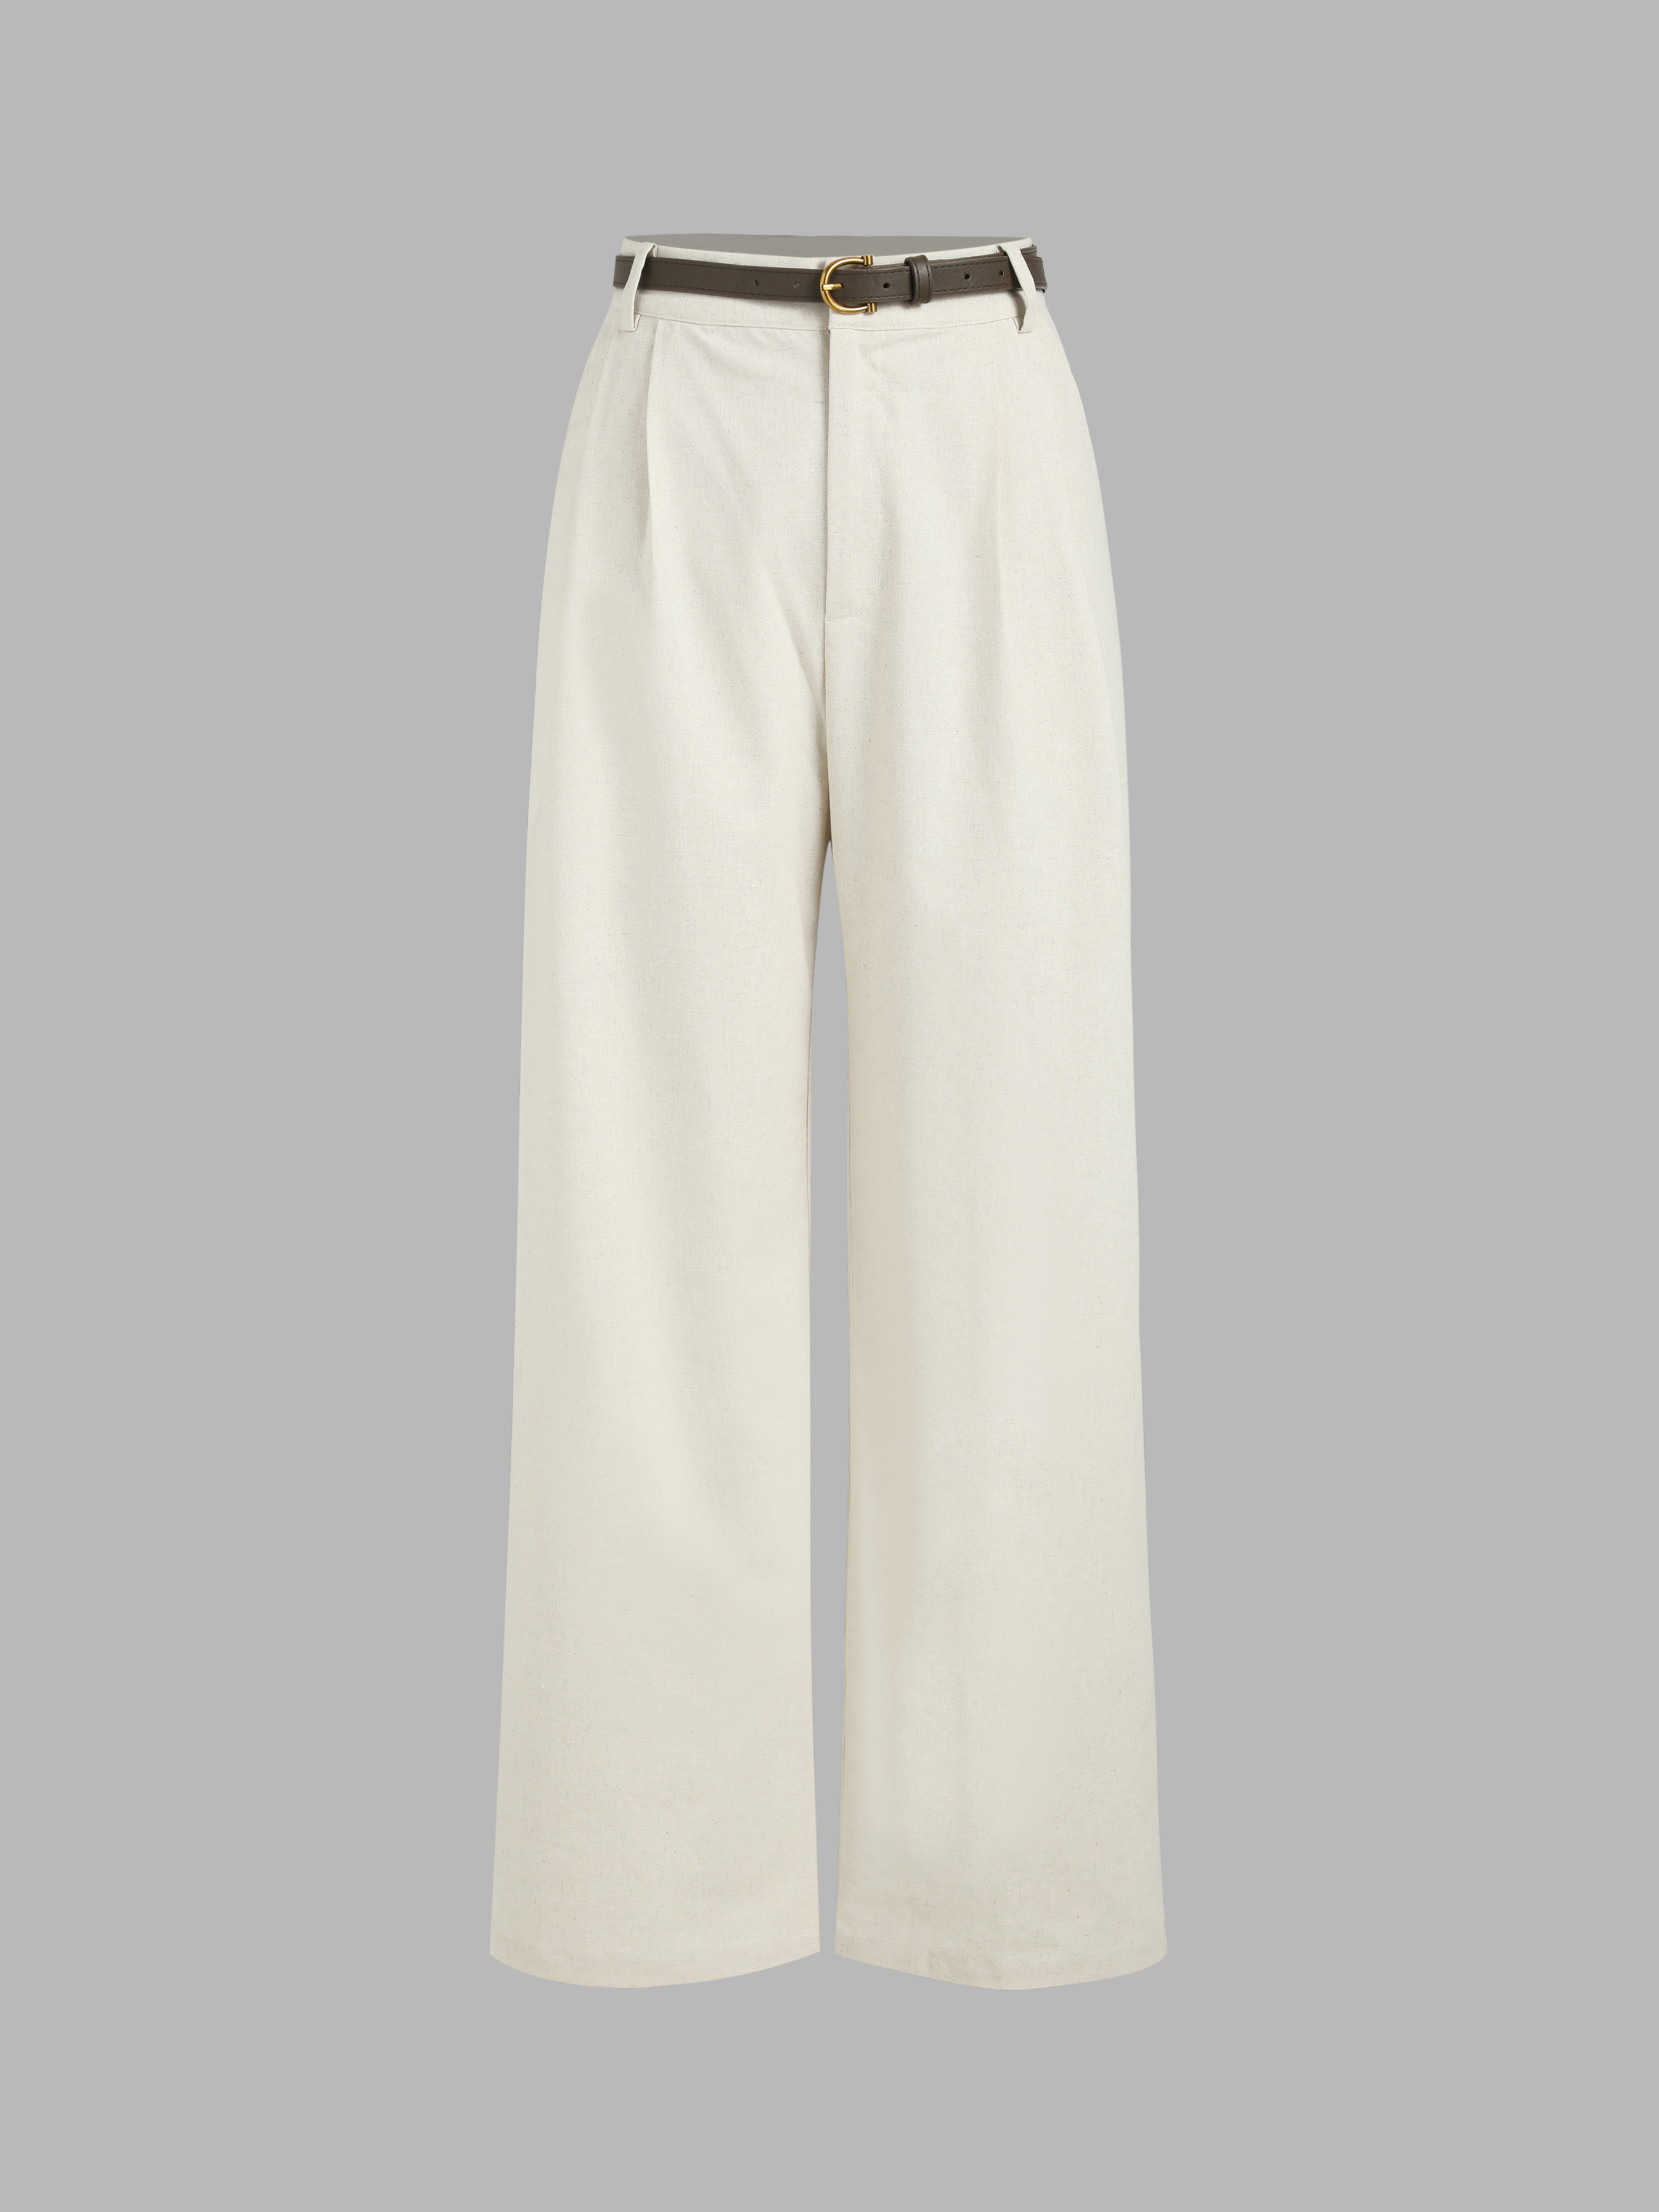 white leg tan pants with belt